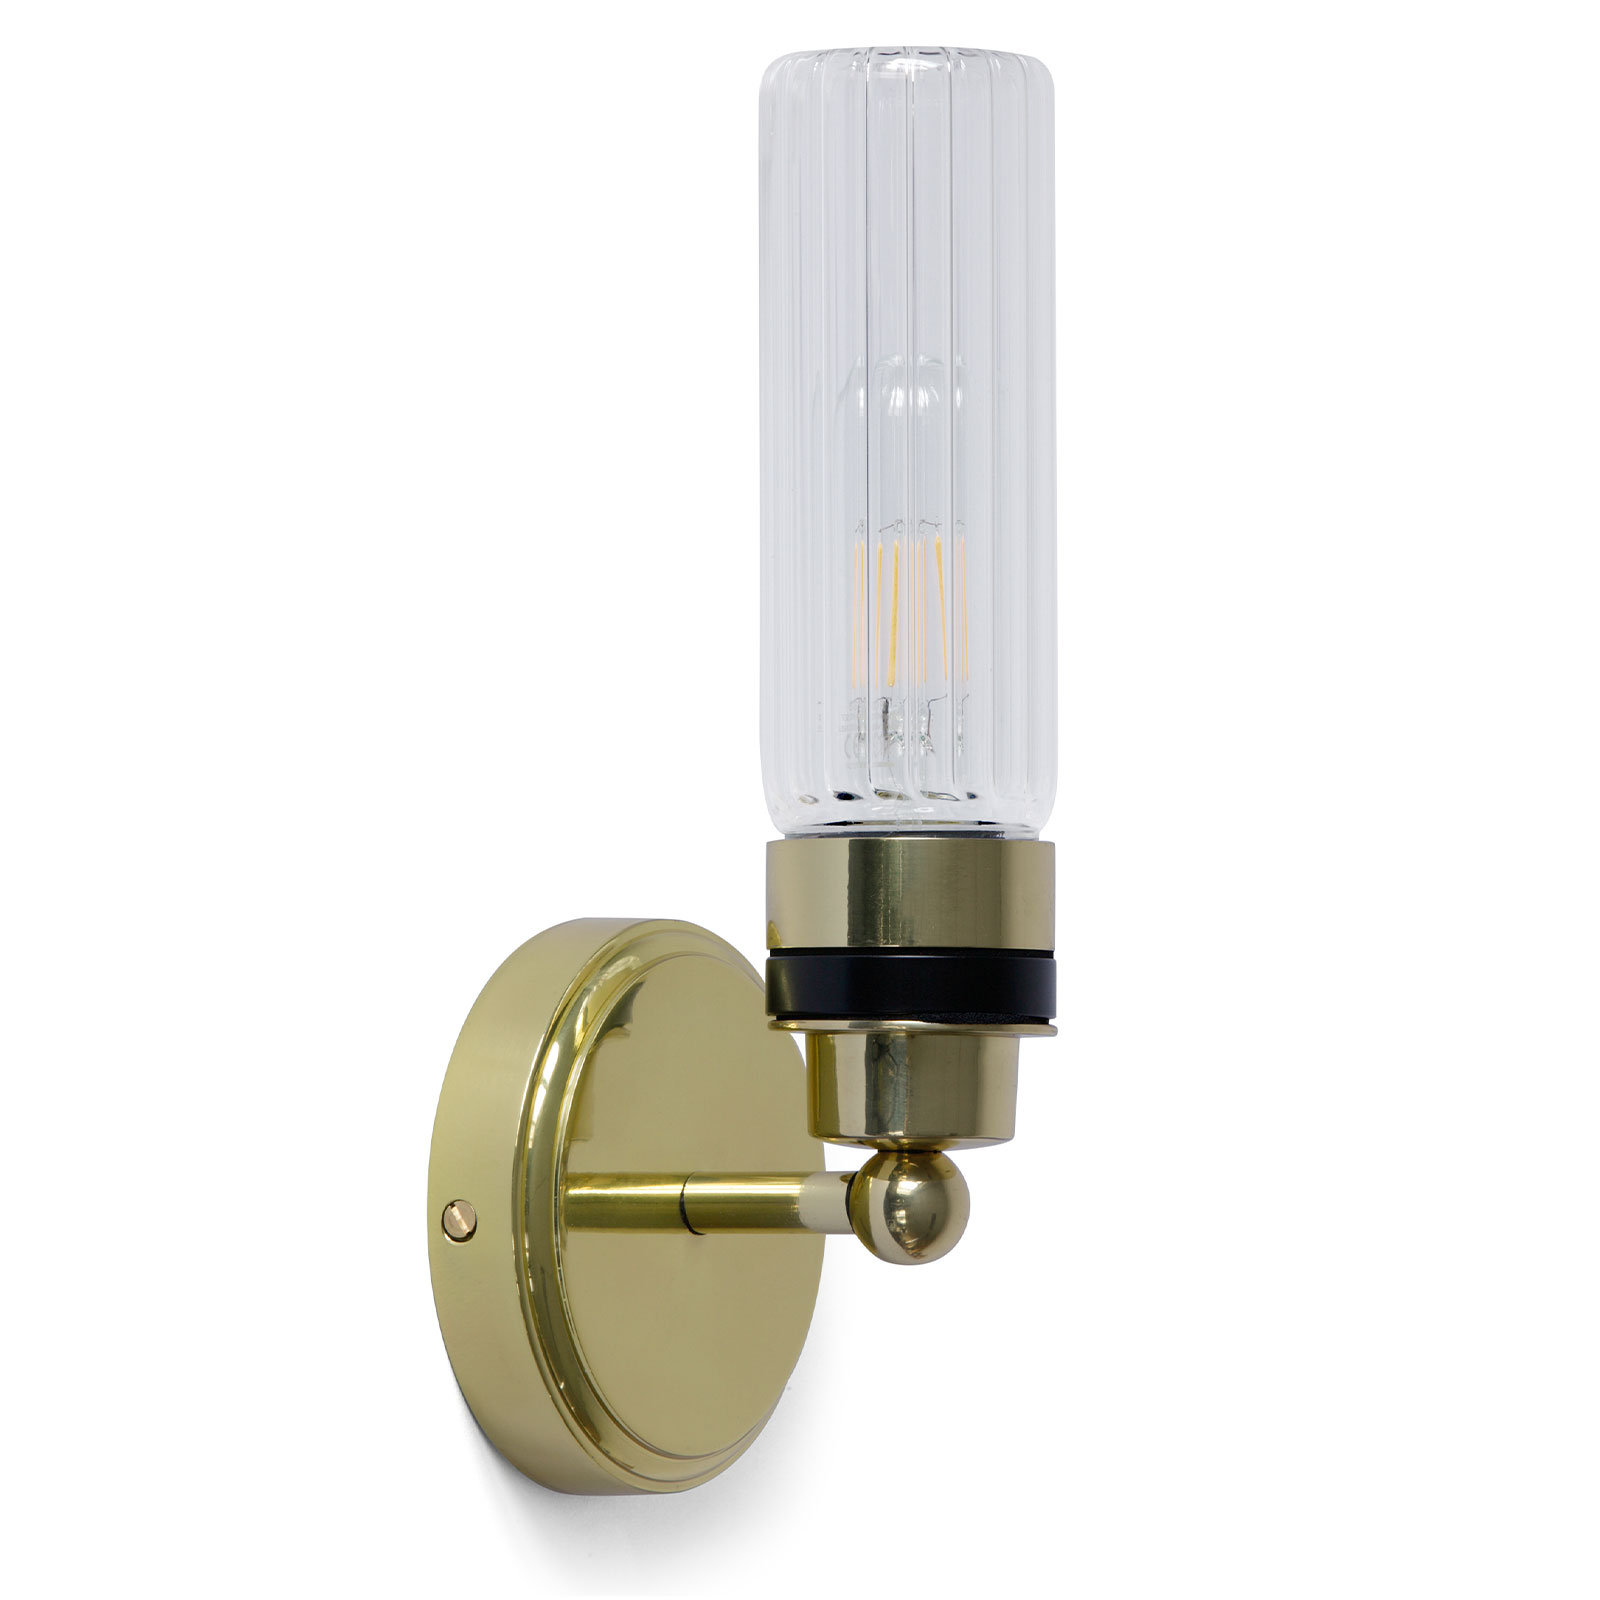 Badezimmer-Wandlampe mit klarem oder prismatischem Glaszylinder, IP65: Messing poliert, prismatisches Glas